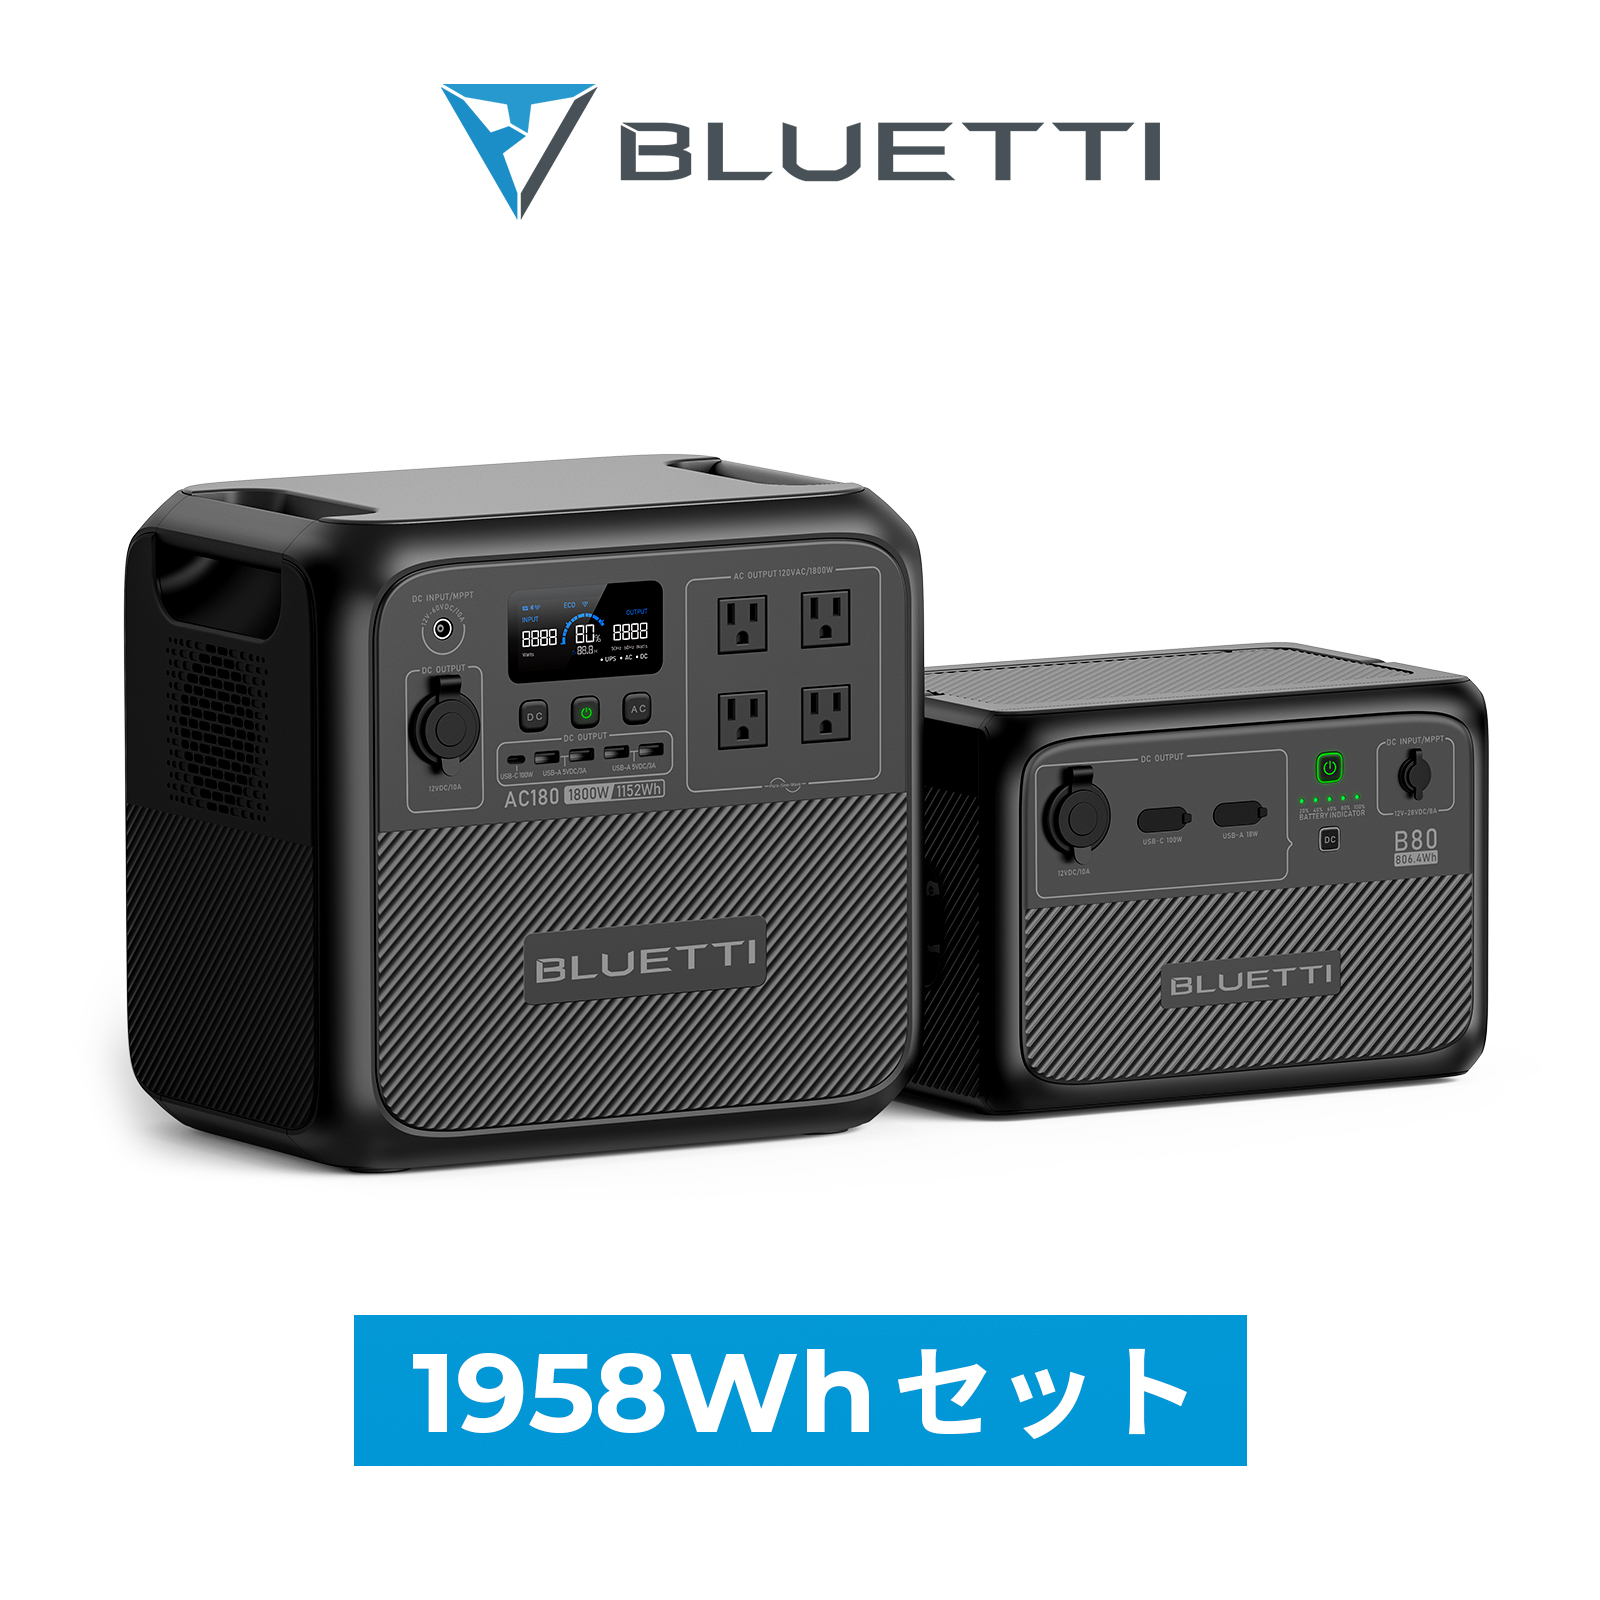 【楽天市場】BLUETTI ポータブル電源 EB70S+B80+接続ケーブル 